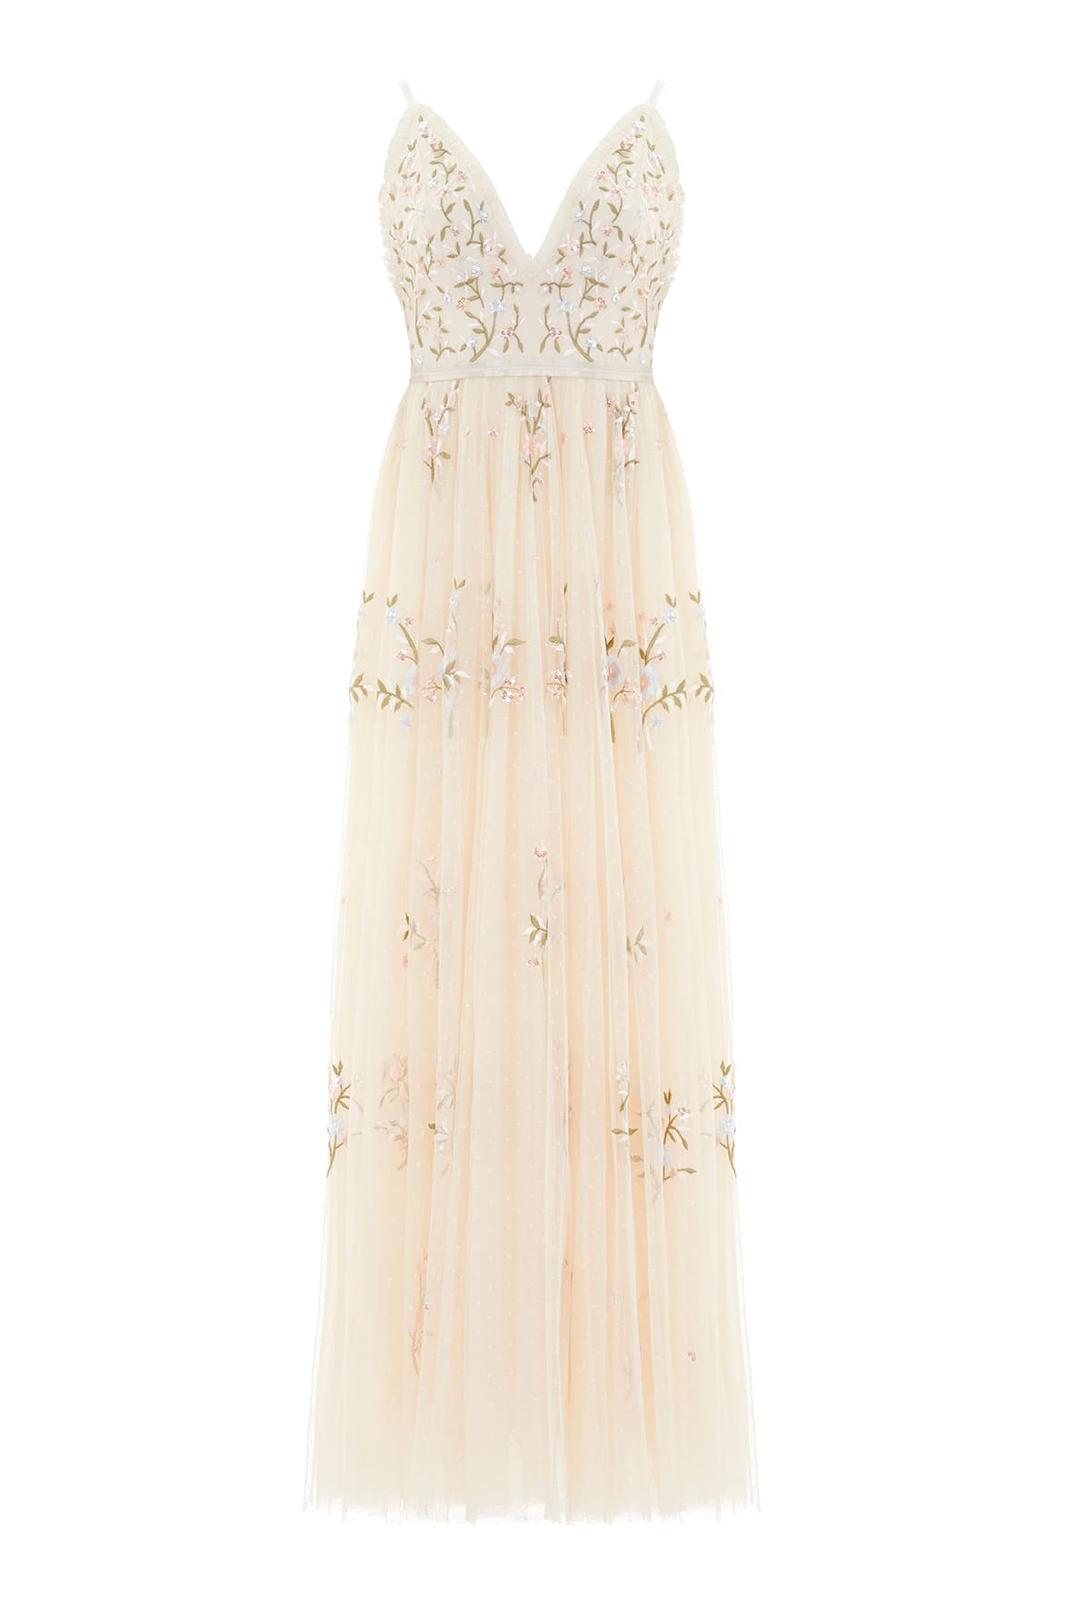 Romantické šaty Needle & Thread Petunia Gown - Obrázek č. 1